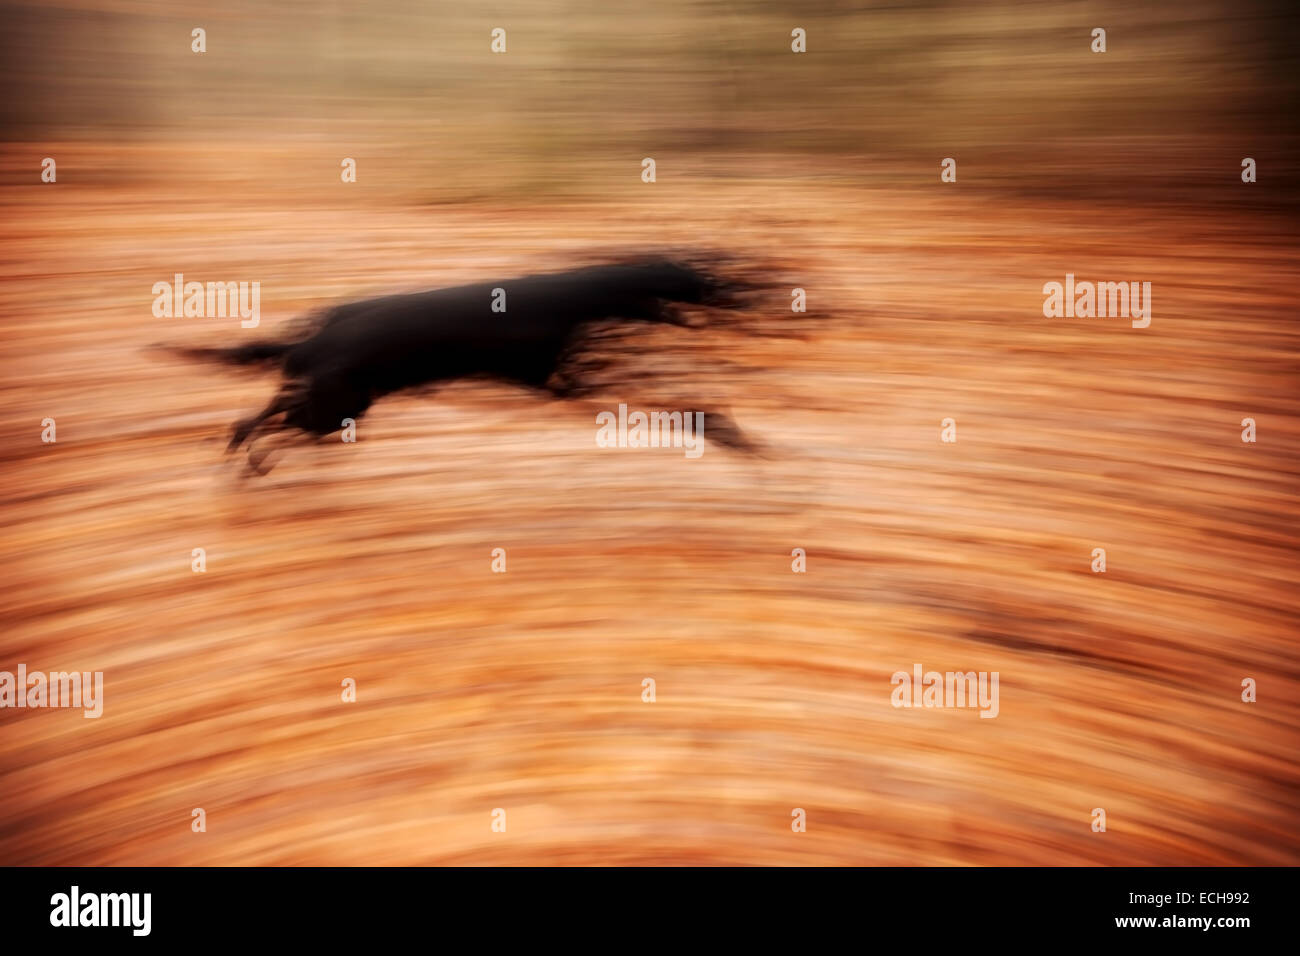 Zusammenfassung Hintergrund. Bewegung verwischt laufender Hund im herbstlichen Park. Stockfoto